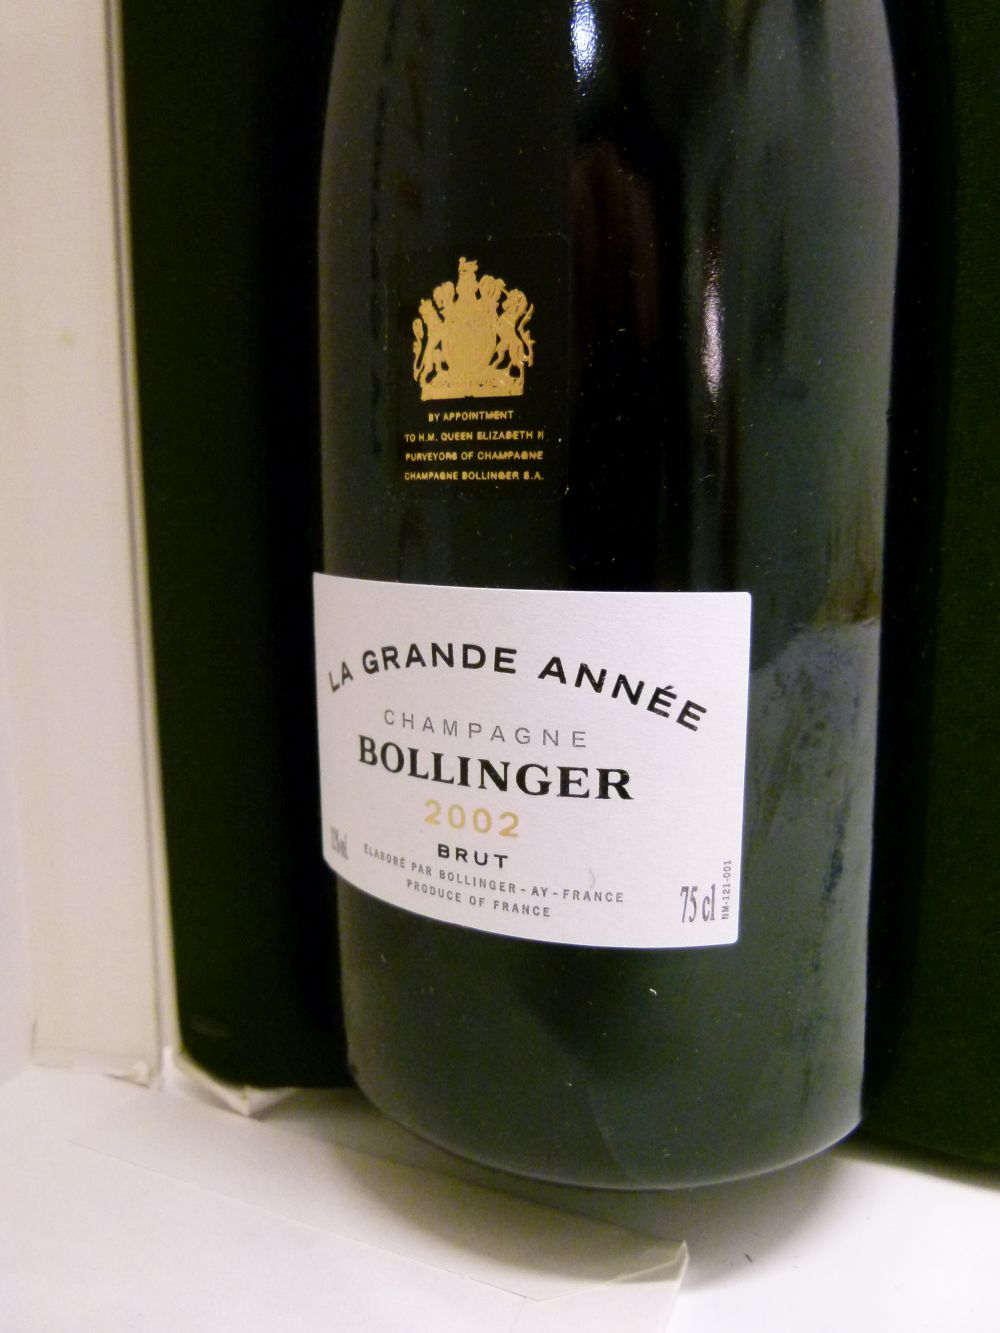 Bottle of Bollinger La Grande Annee Brut Champagne, 2002 vintage, in presentation box (1) Condition: - Image 4 of 6